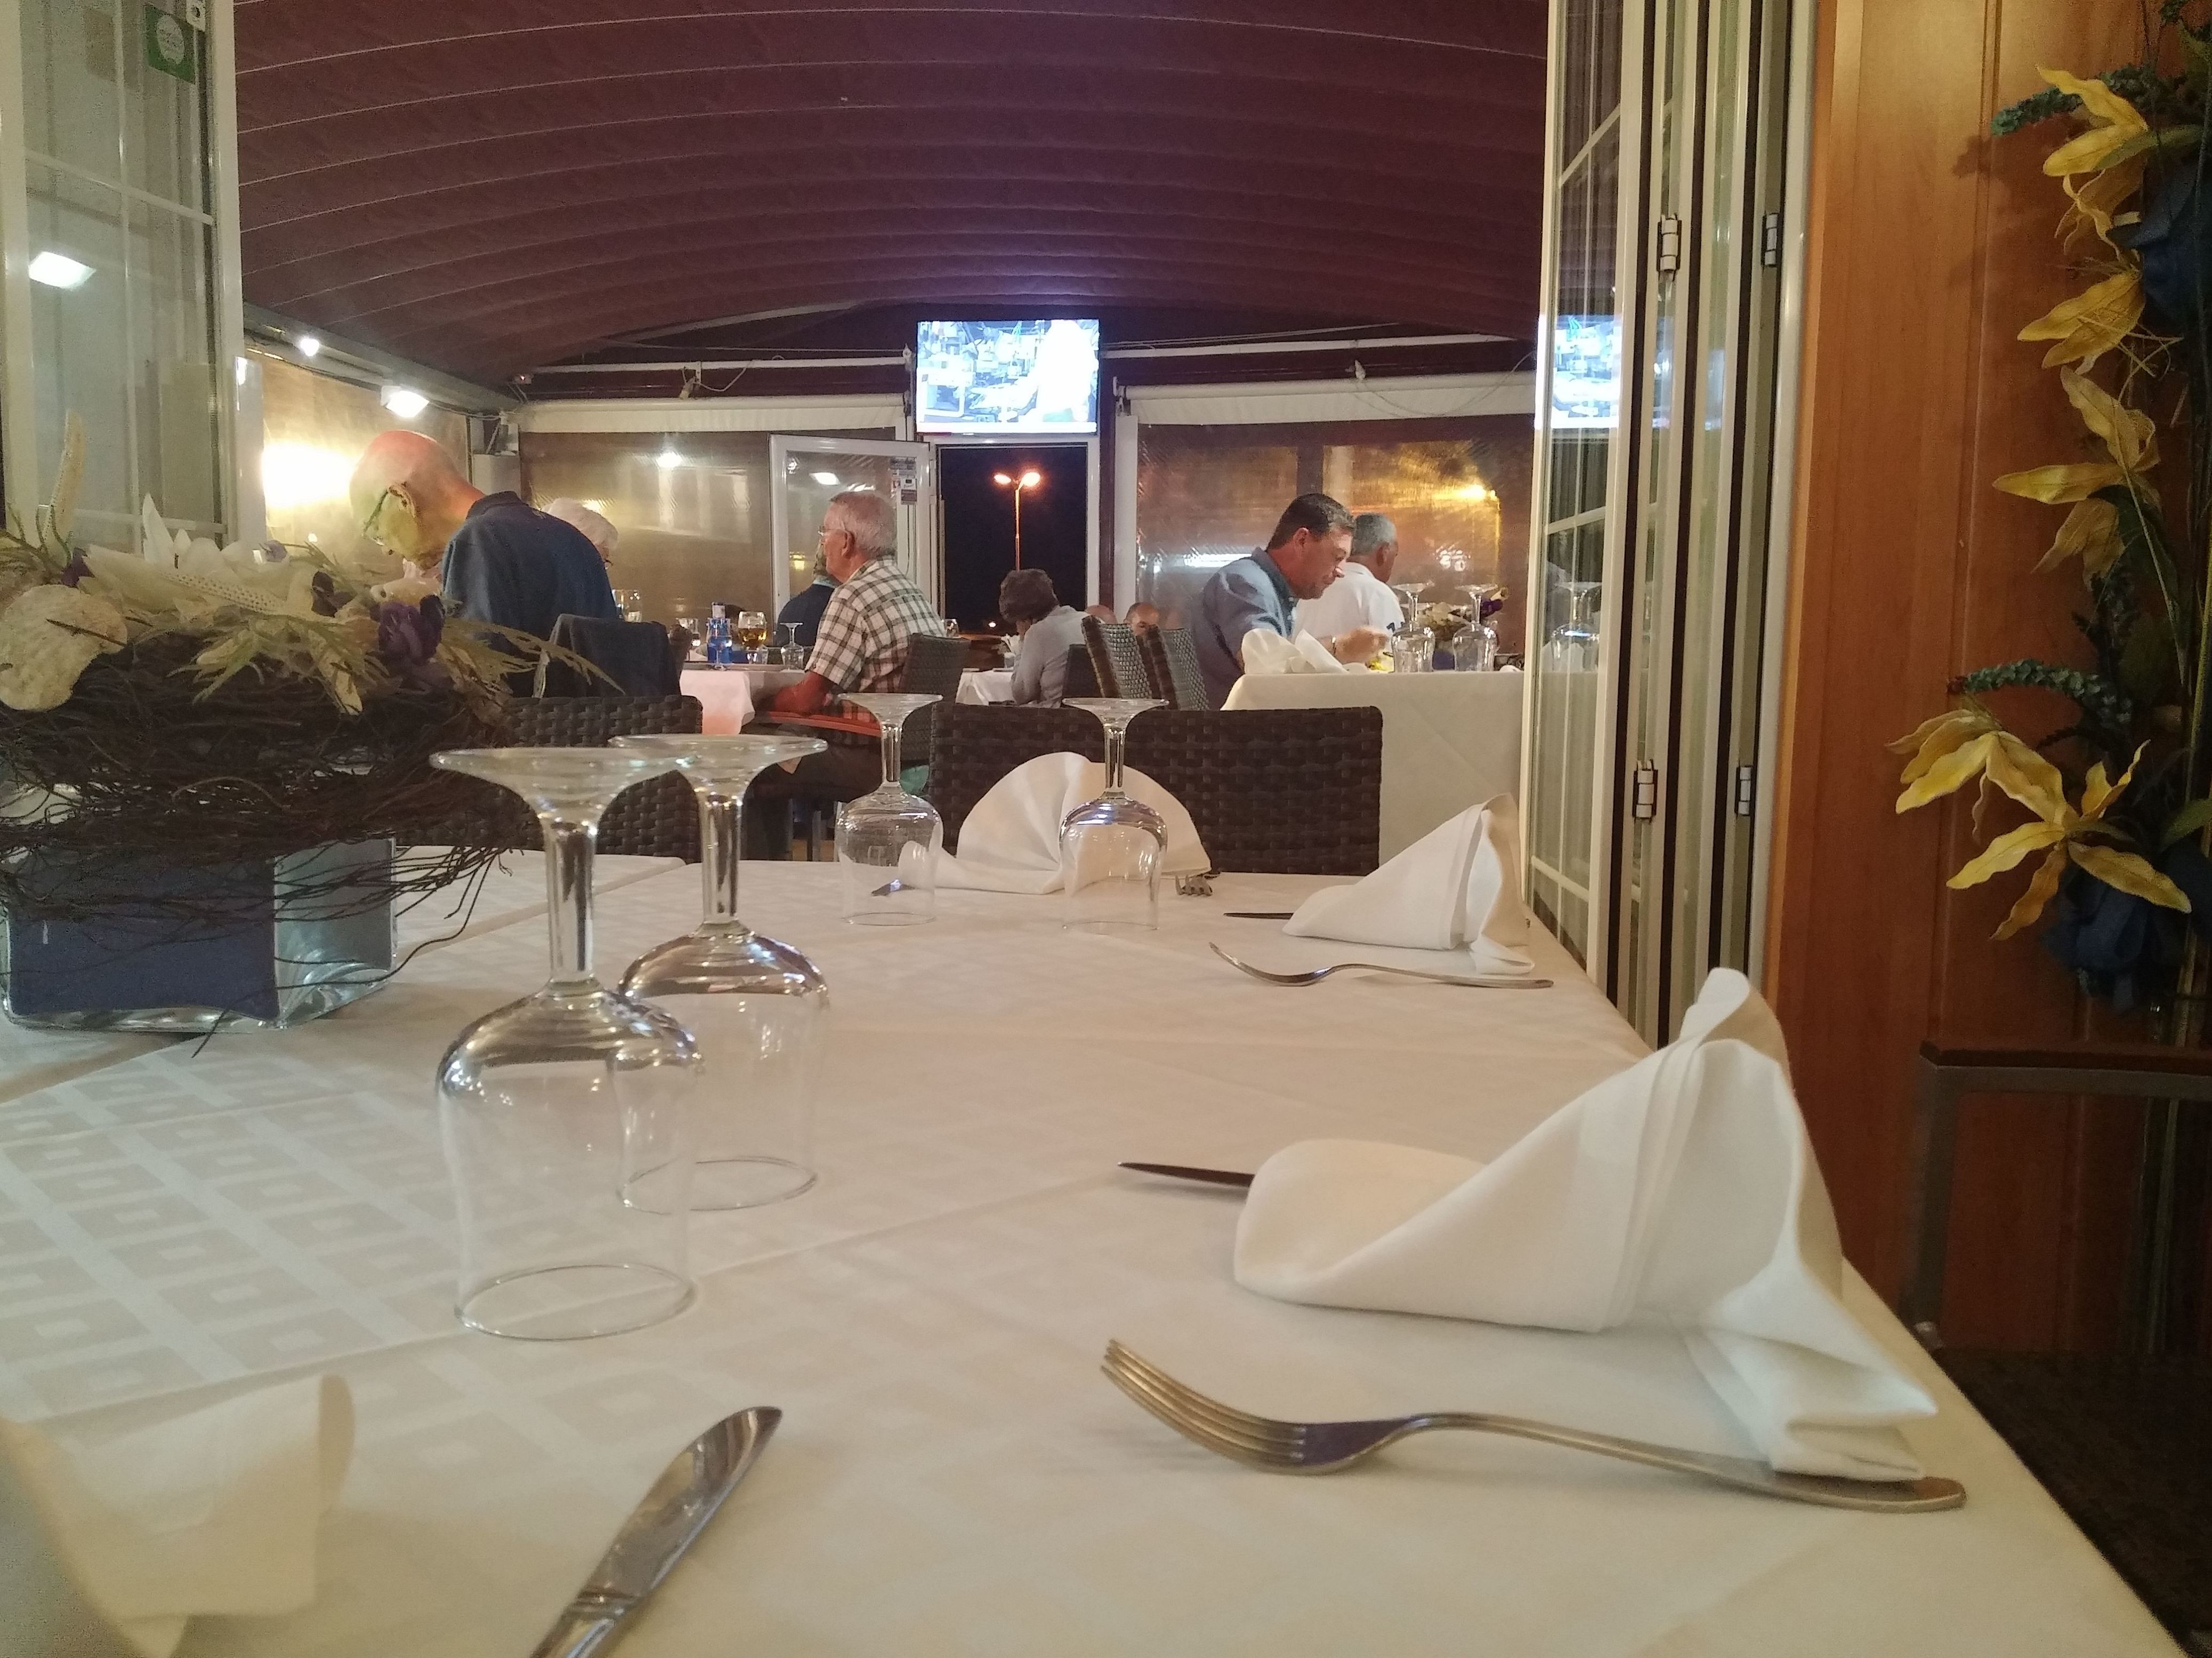 Foto 15 de Restaurante en Torroella de Montgrí | Restaurant Rosamar